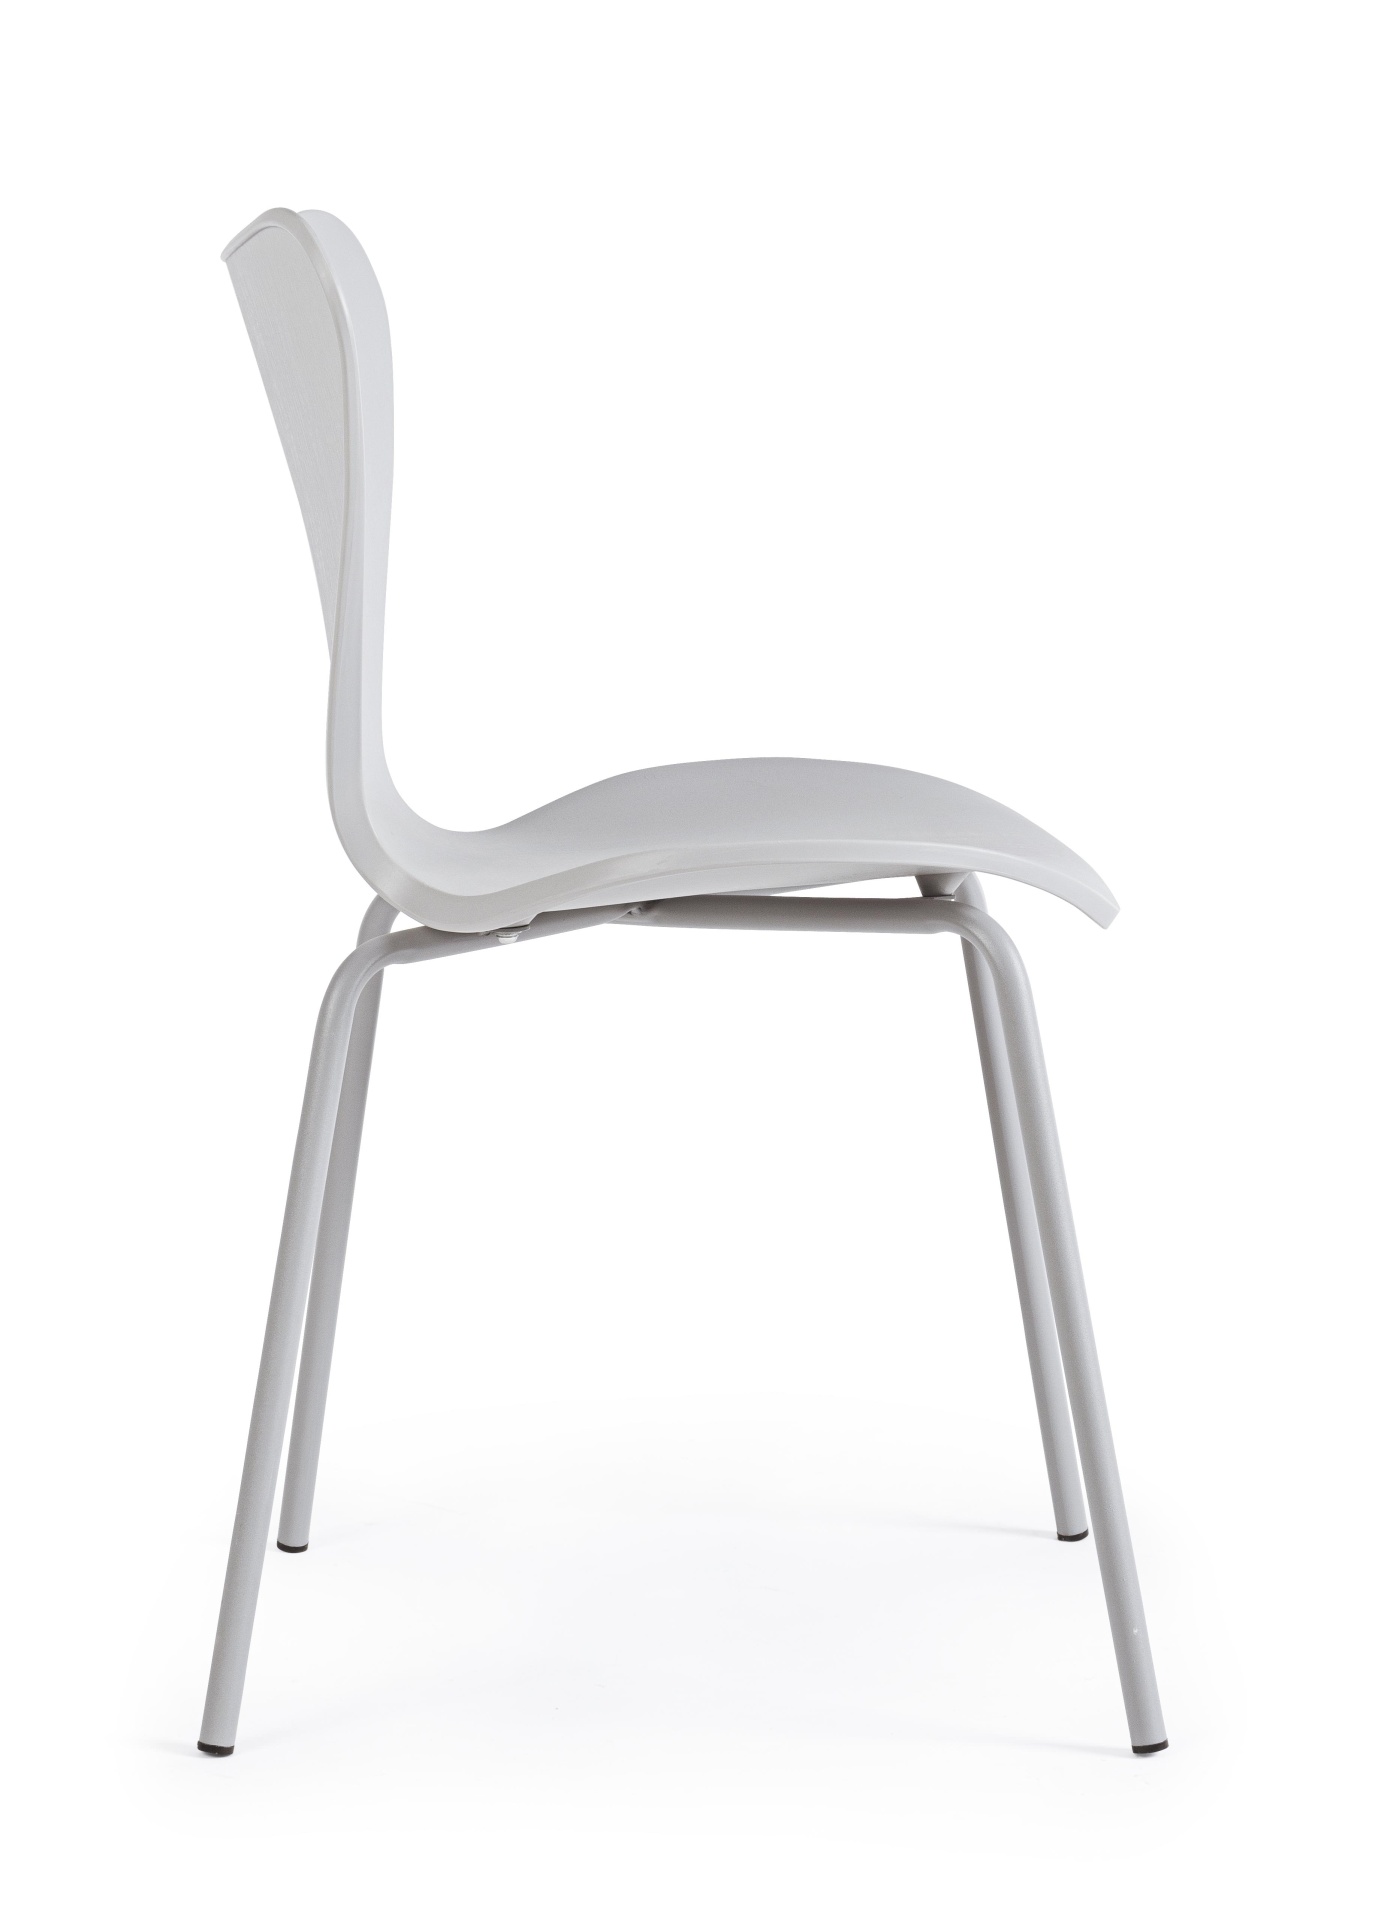 Der Stuhl Tessa überzeugt mit seinem modernem Design. Gefertigt wurde der Stuhl aus Kunststoff, welcher einen hellgrauen Farbton besitzt. Das Gestell ist aus Metall und ist in einer hellgrauen Farbe. Die Sitzhöhe beträgt 45 cm.